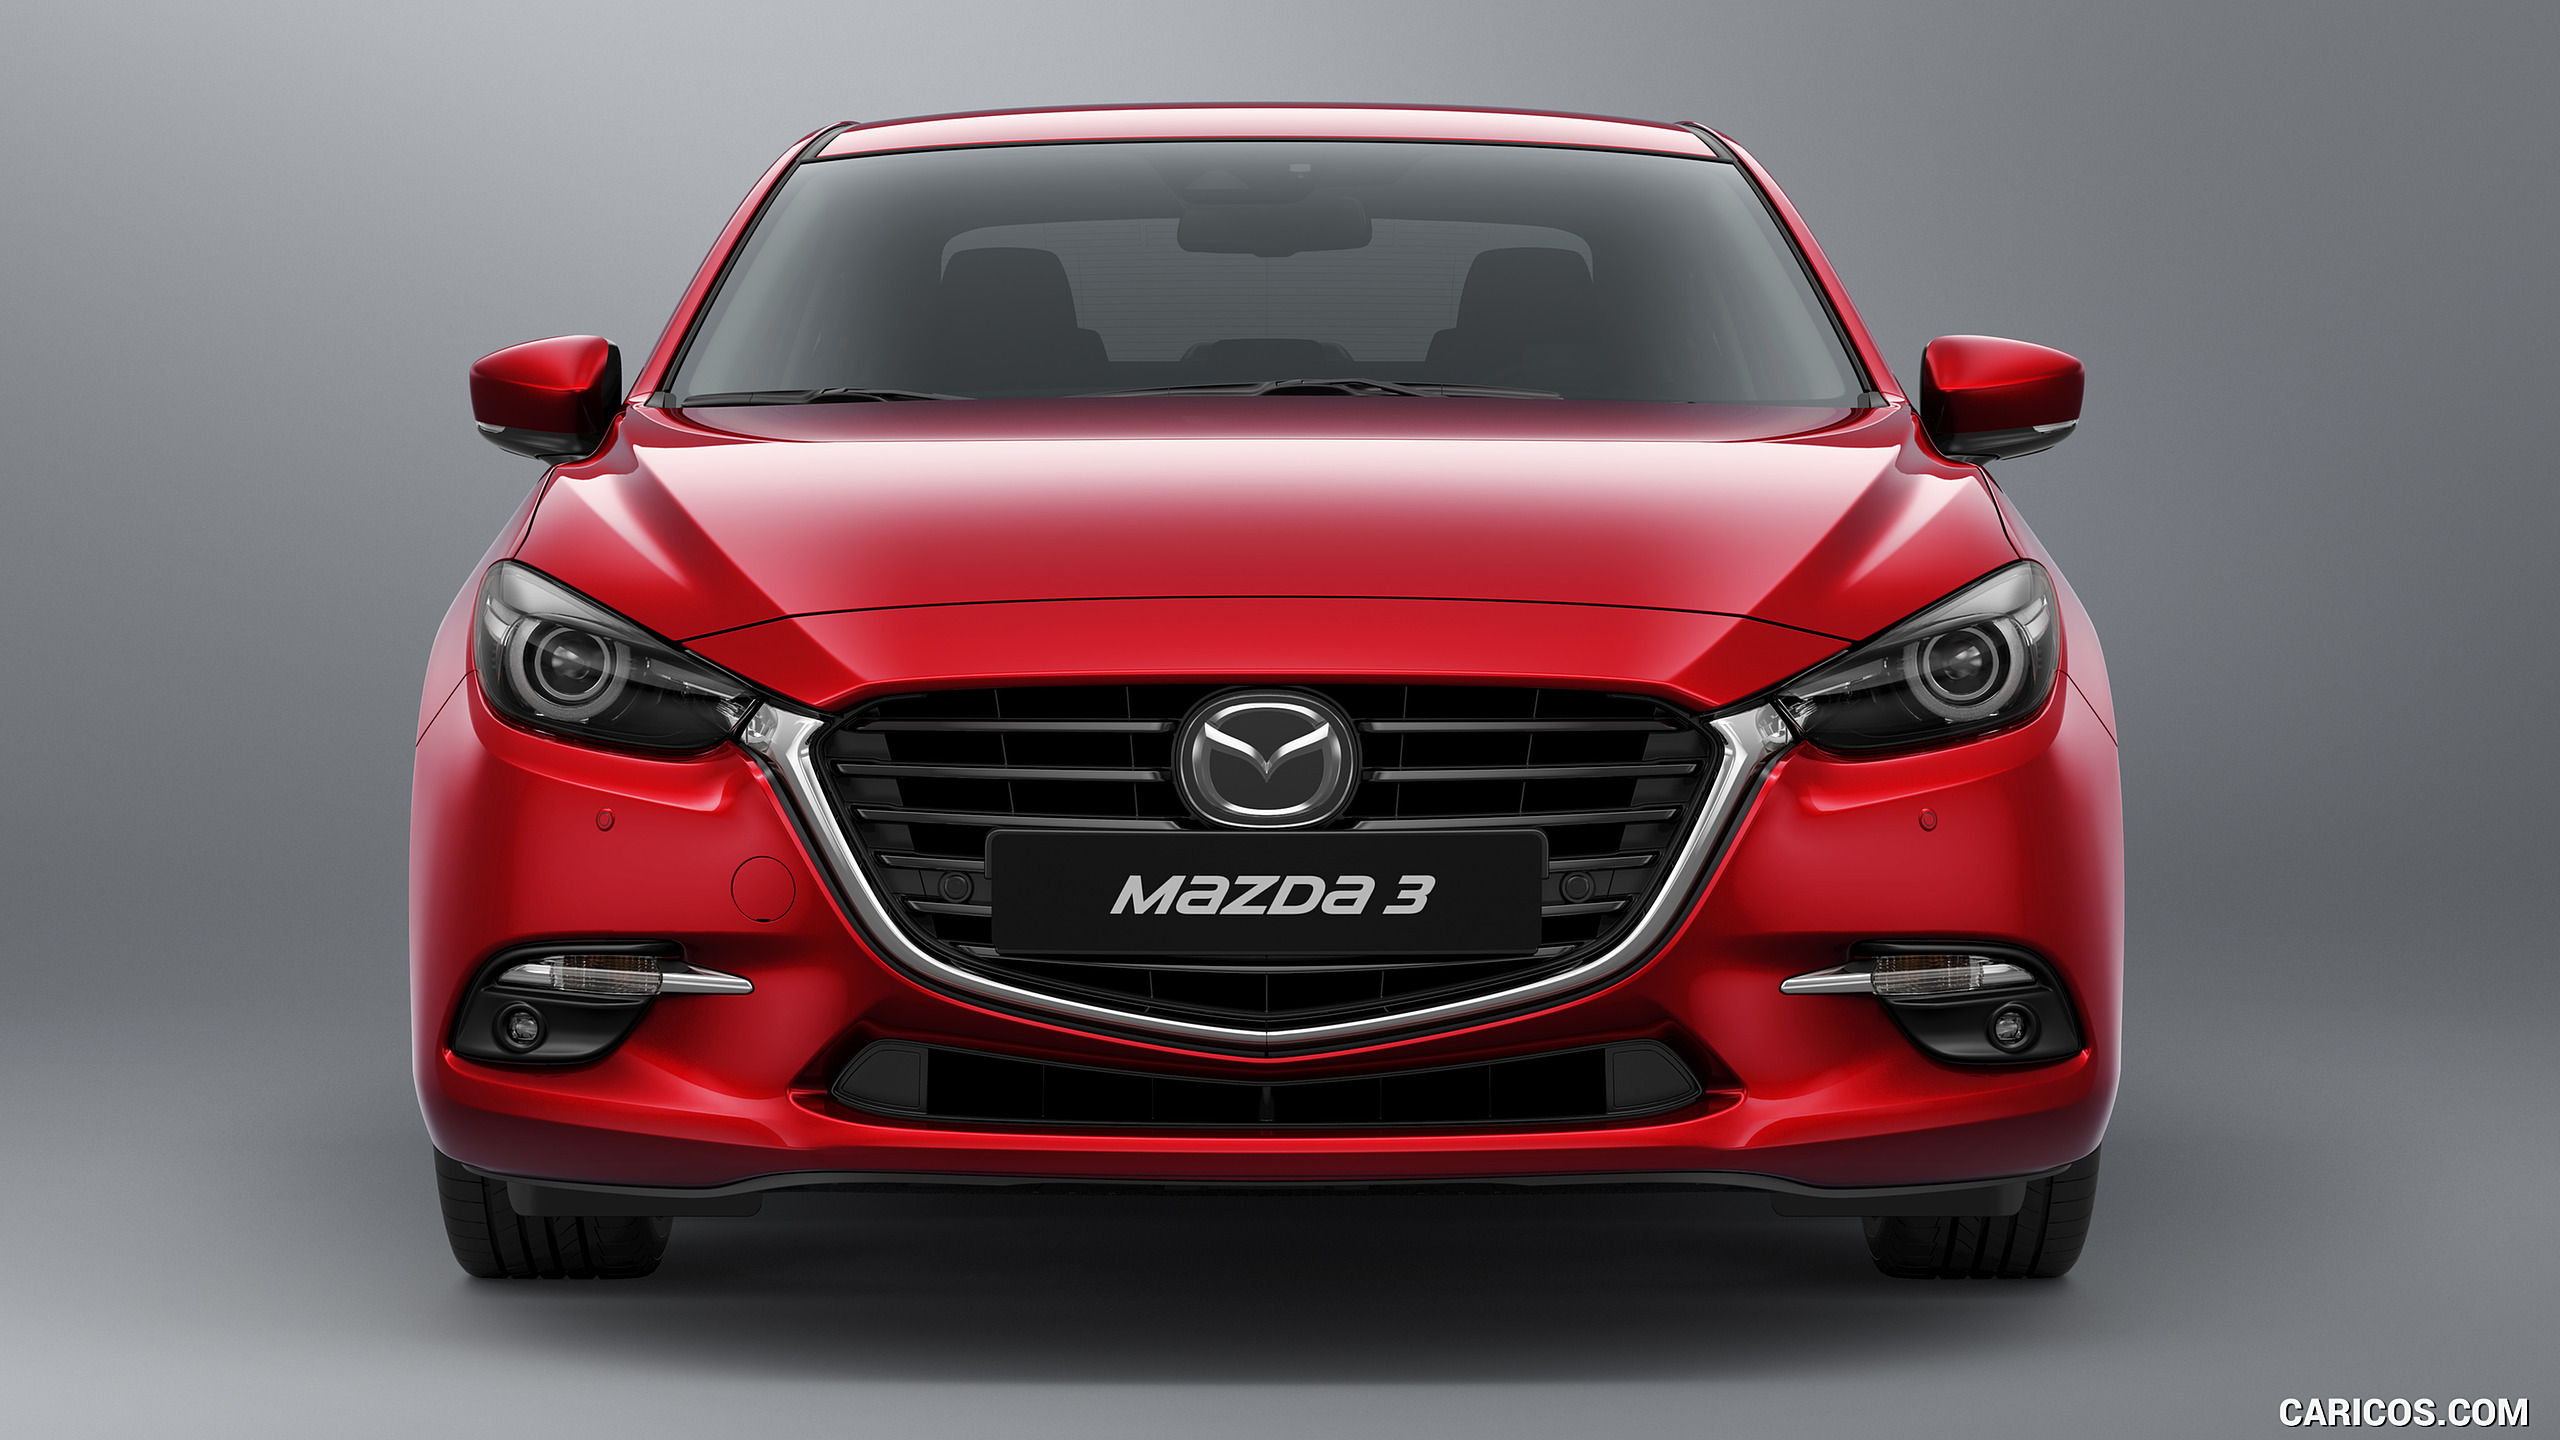 2017 Mazda 3 5-Door Hatchback - Front, #14 of 19